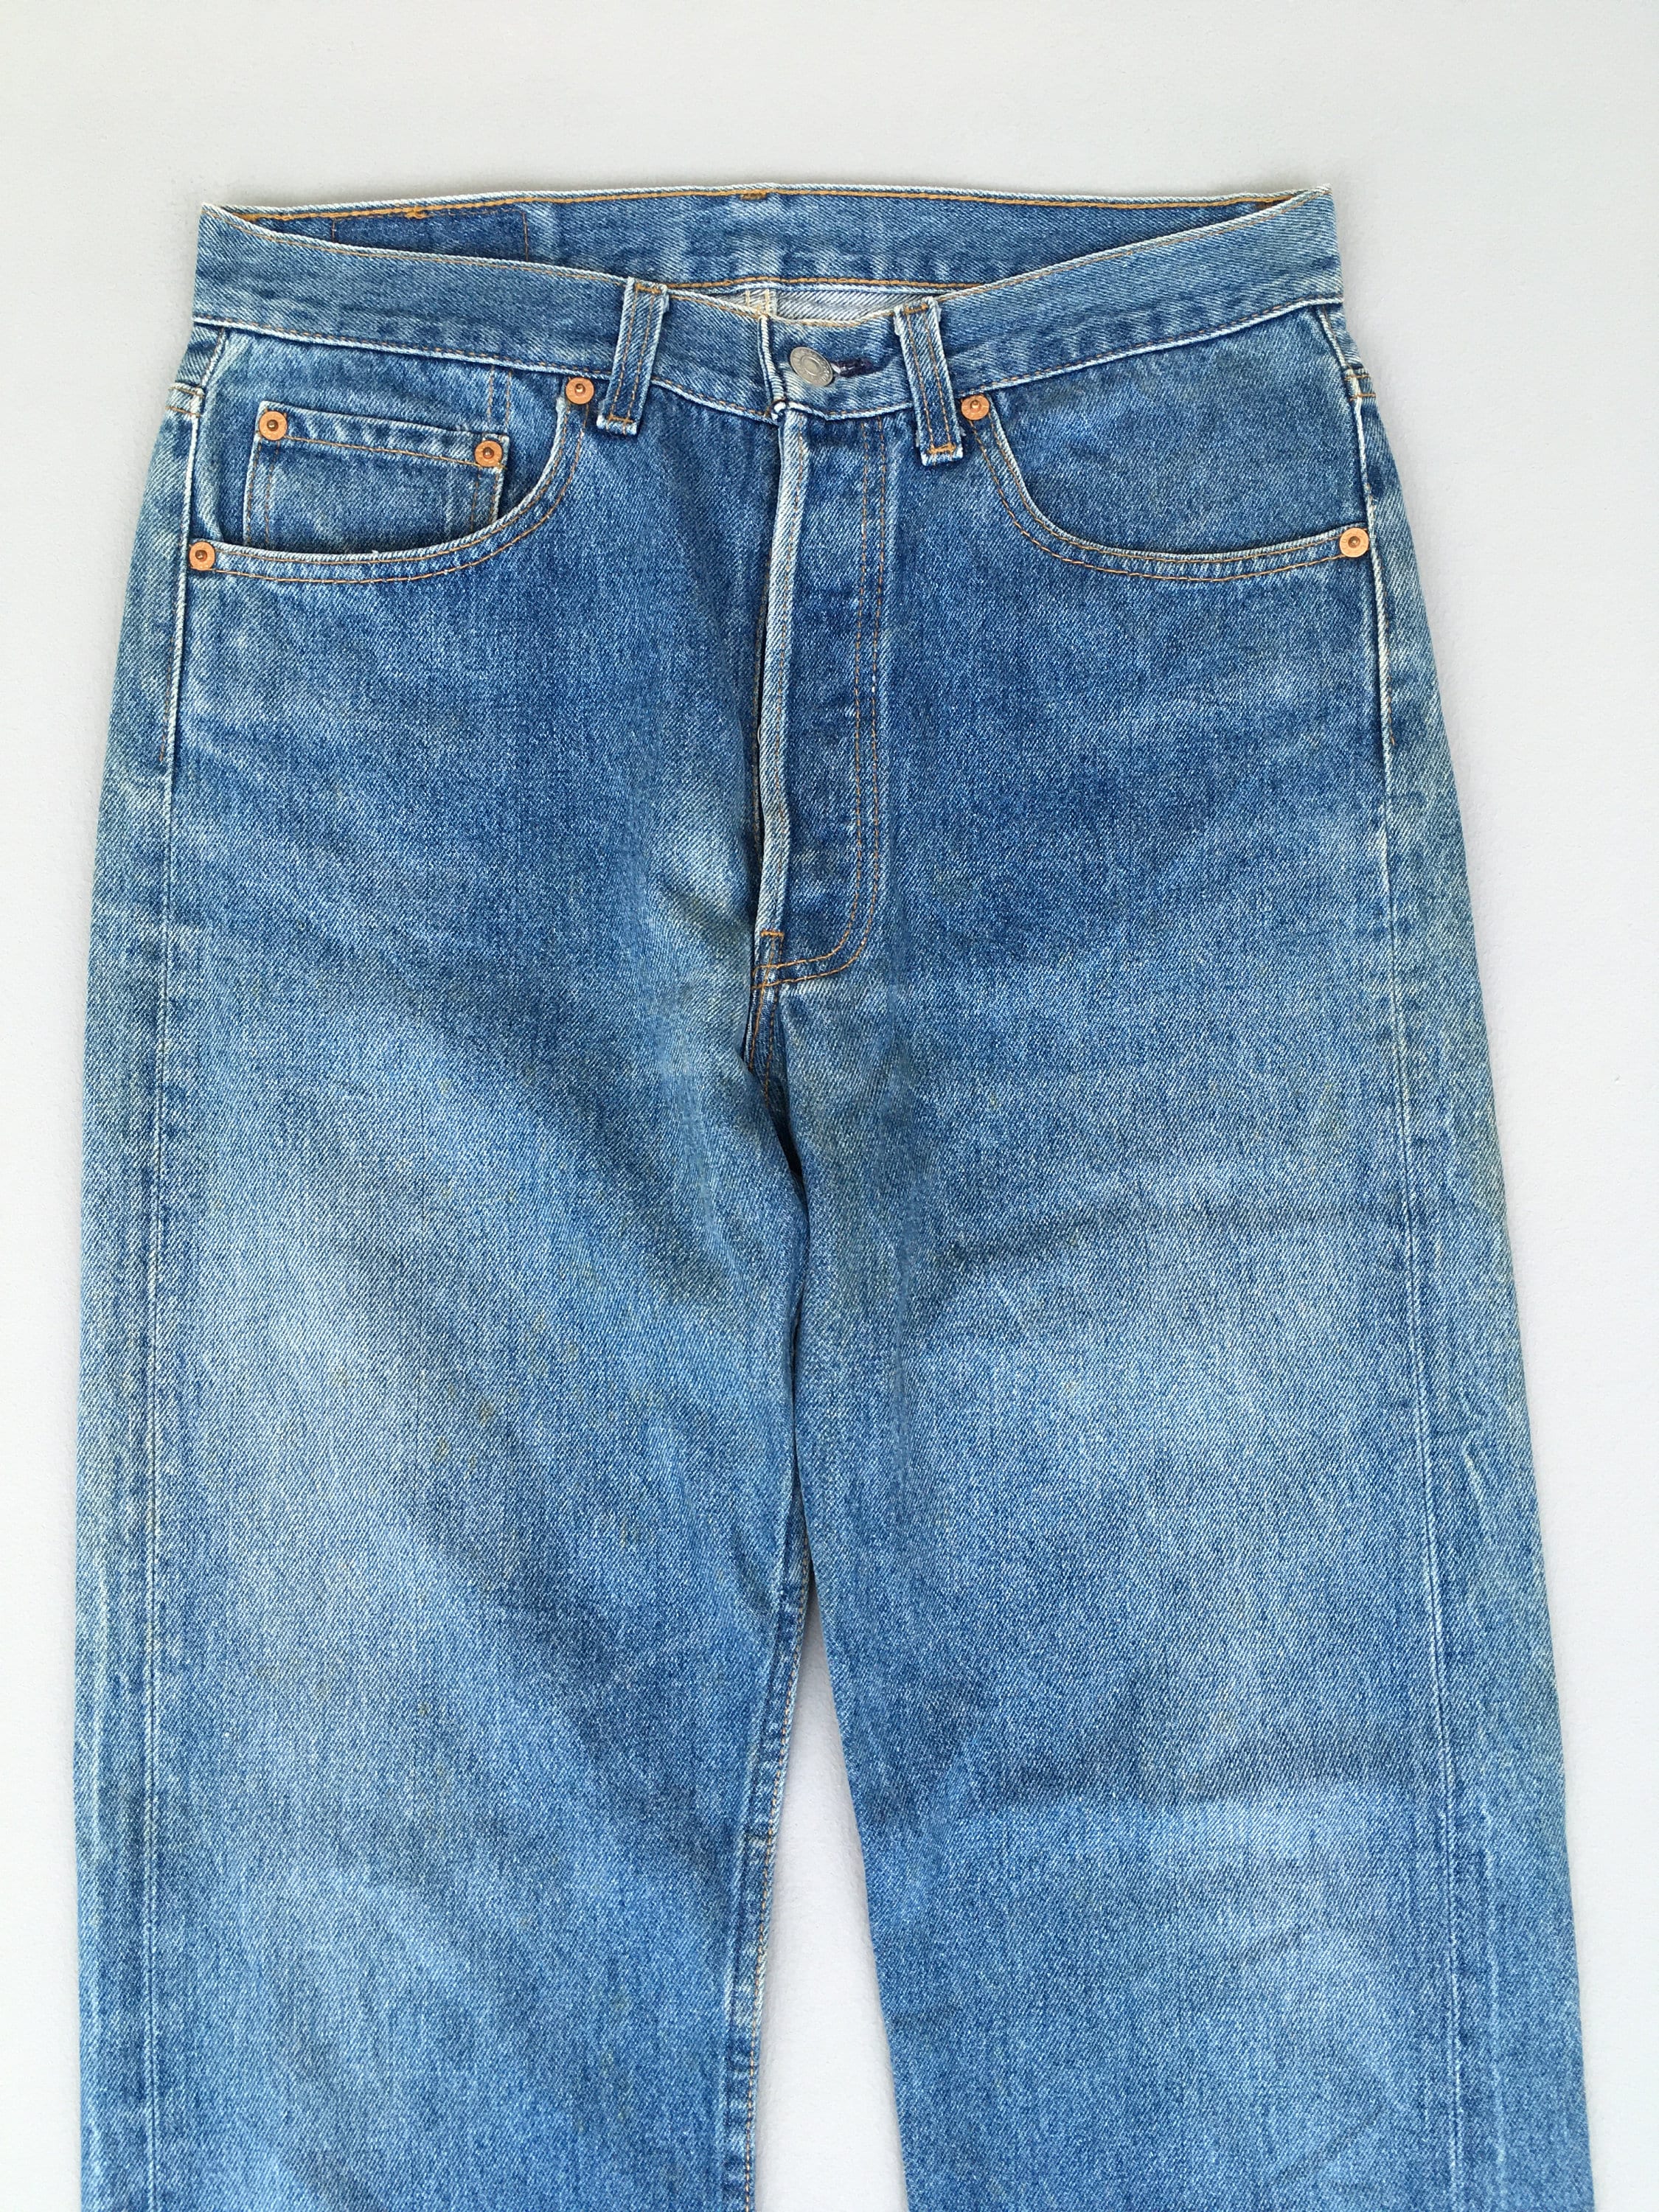 Size 28x30 Vintage Levis 501 Light Wash Blue Jeans 1990s Levis - Etsy  Ireland